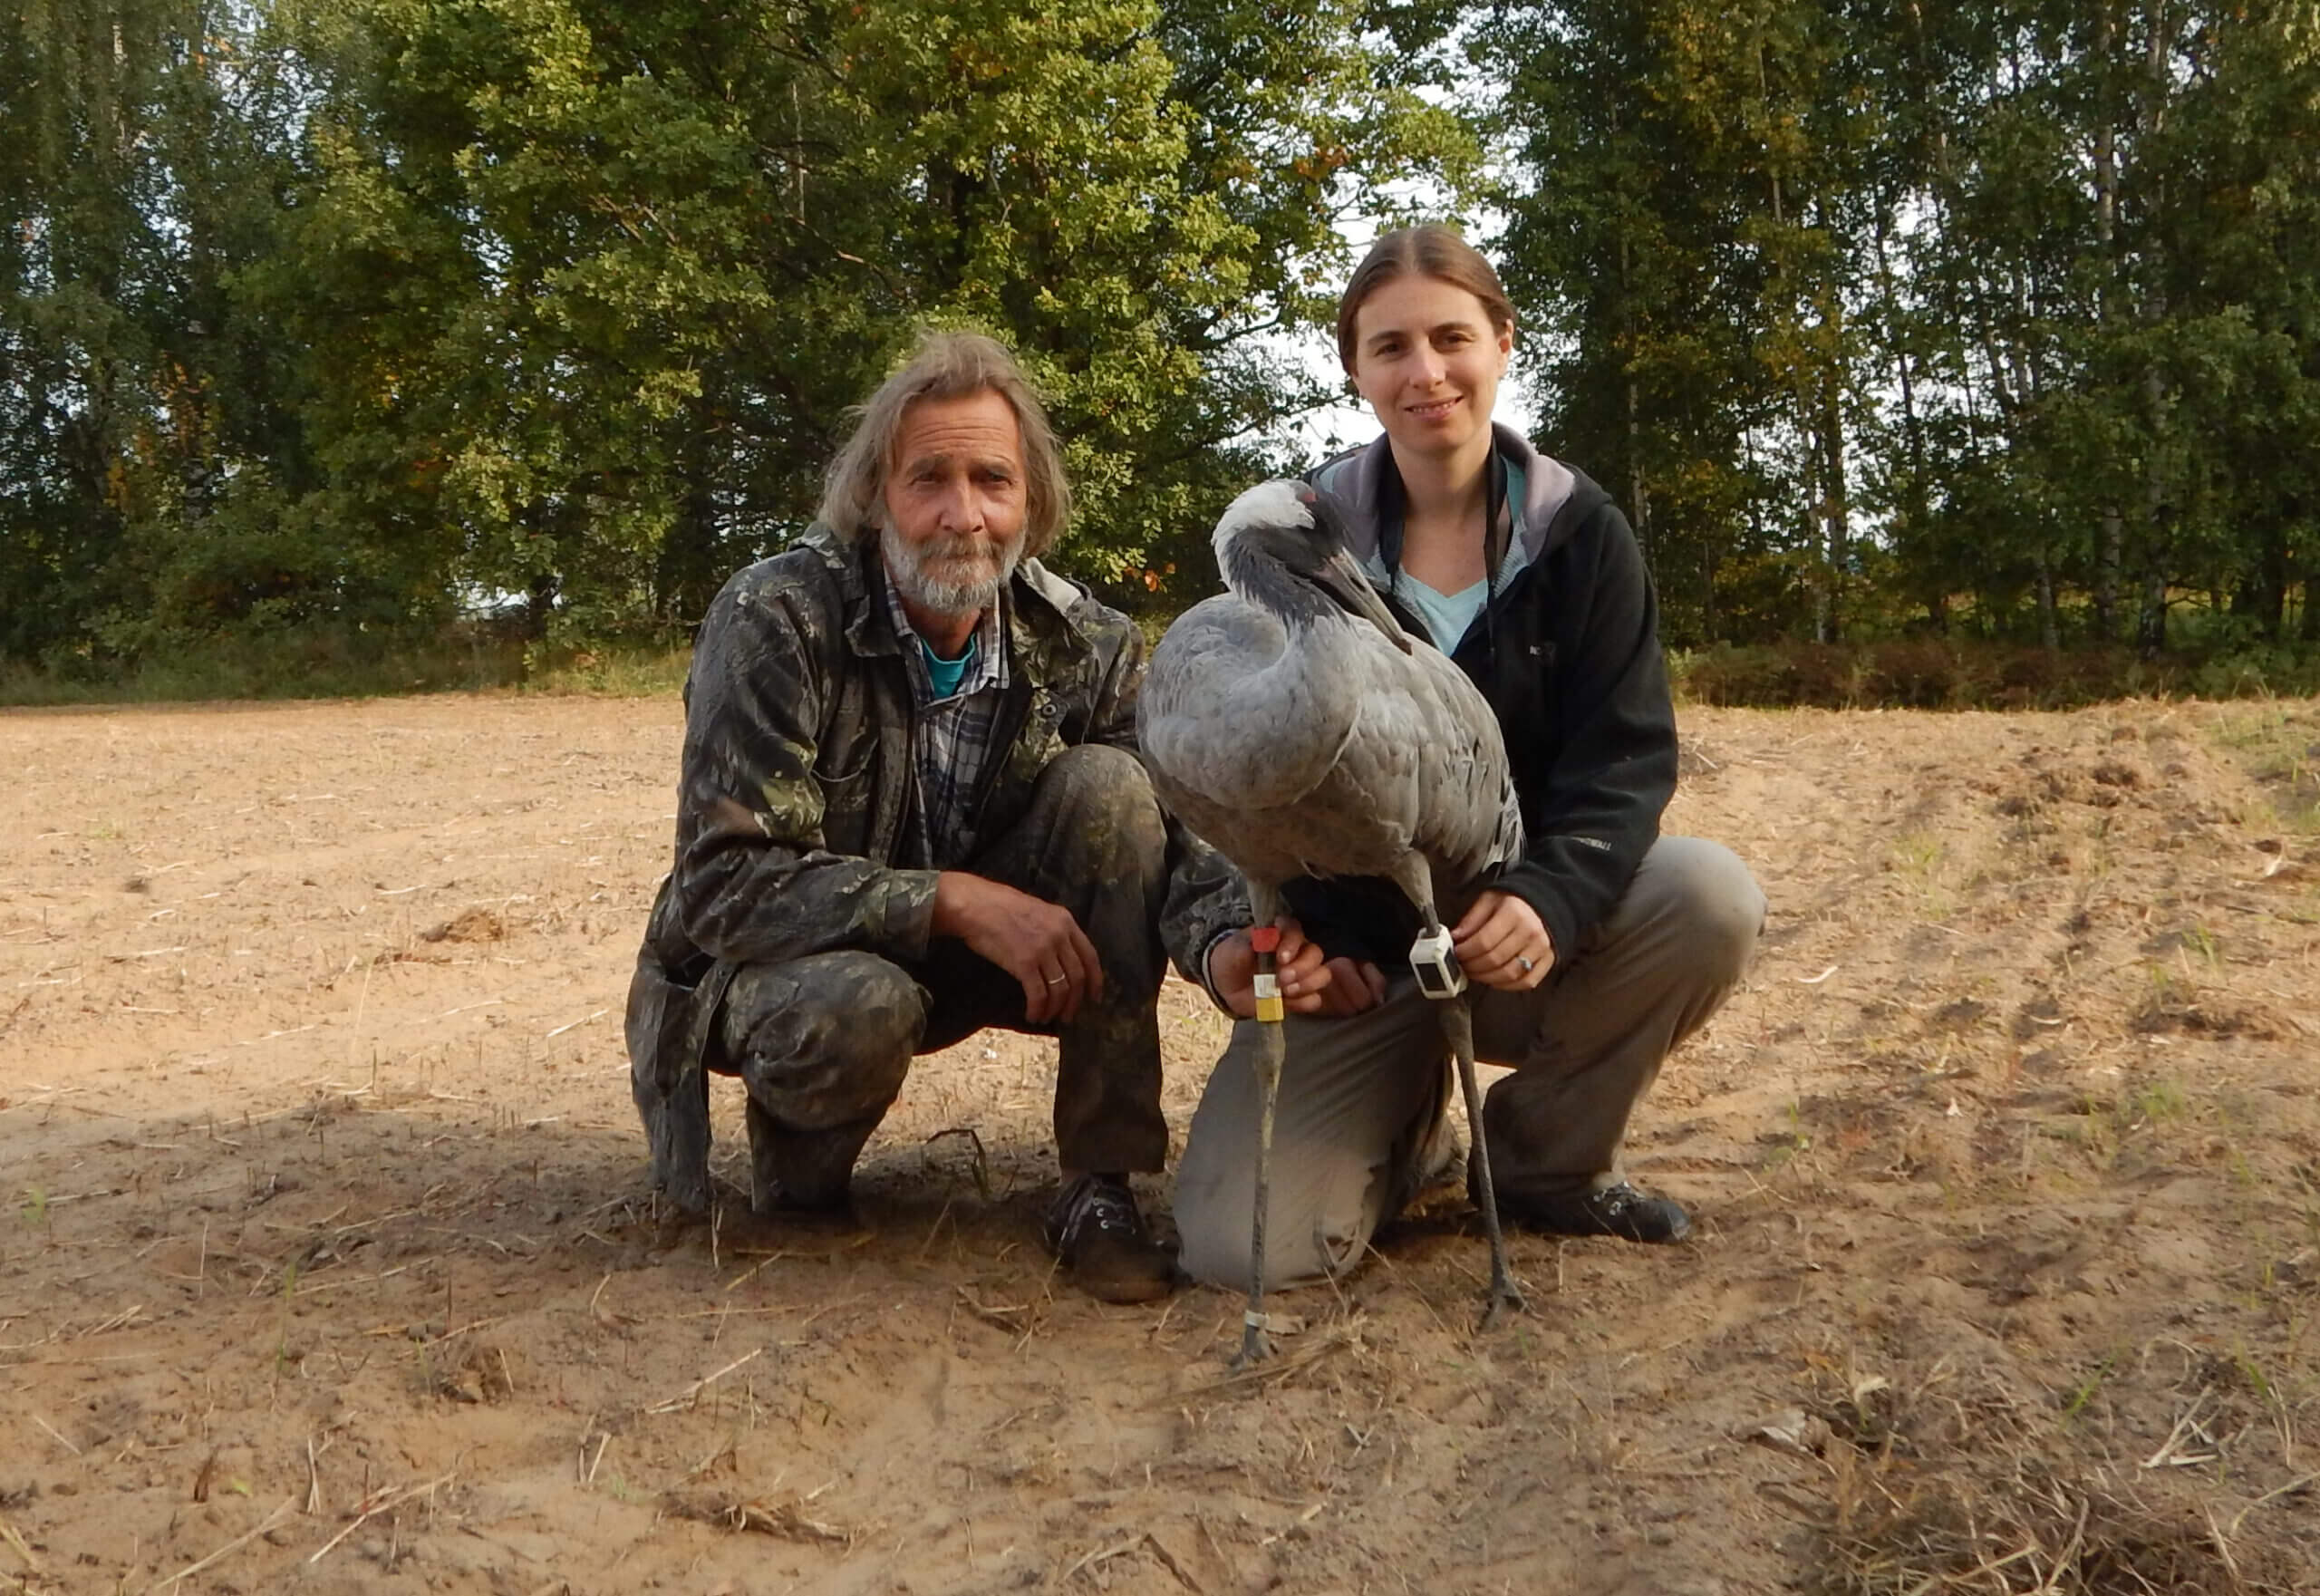 יורי מרקין וסשה פקרסקי בזמן לכידה ומשדור של עגורים ברוסיה. משדר GPS לבן וטבעות סימון צבעוניות נראות על רגלי העגור שנלכד ומושדר. צילום: סשה פקרסקי.